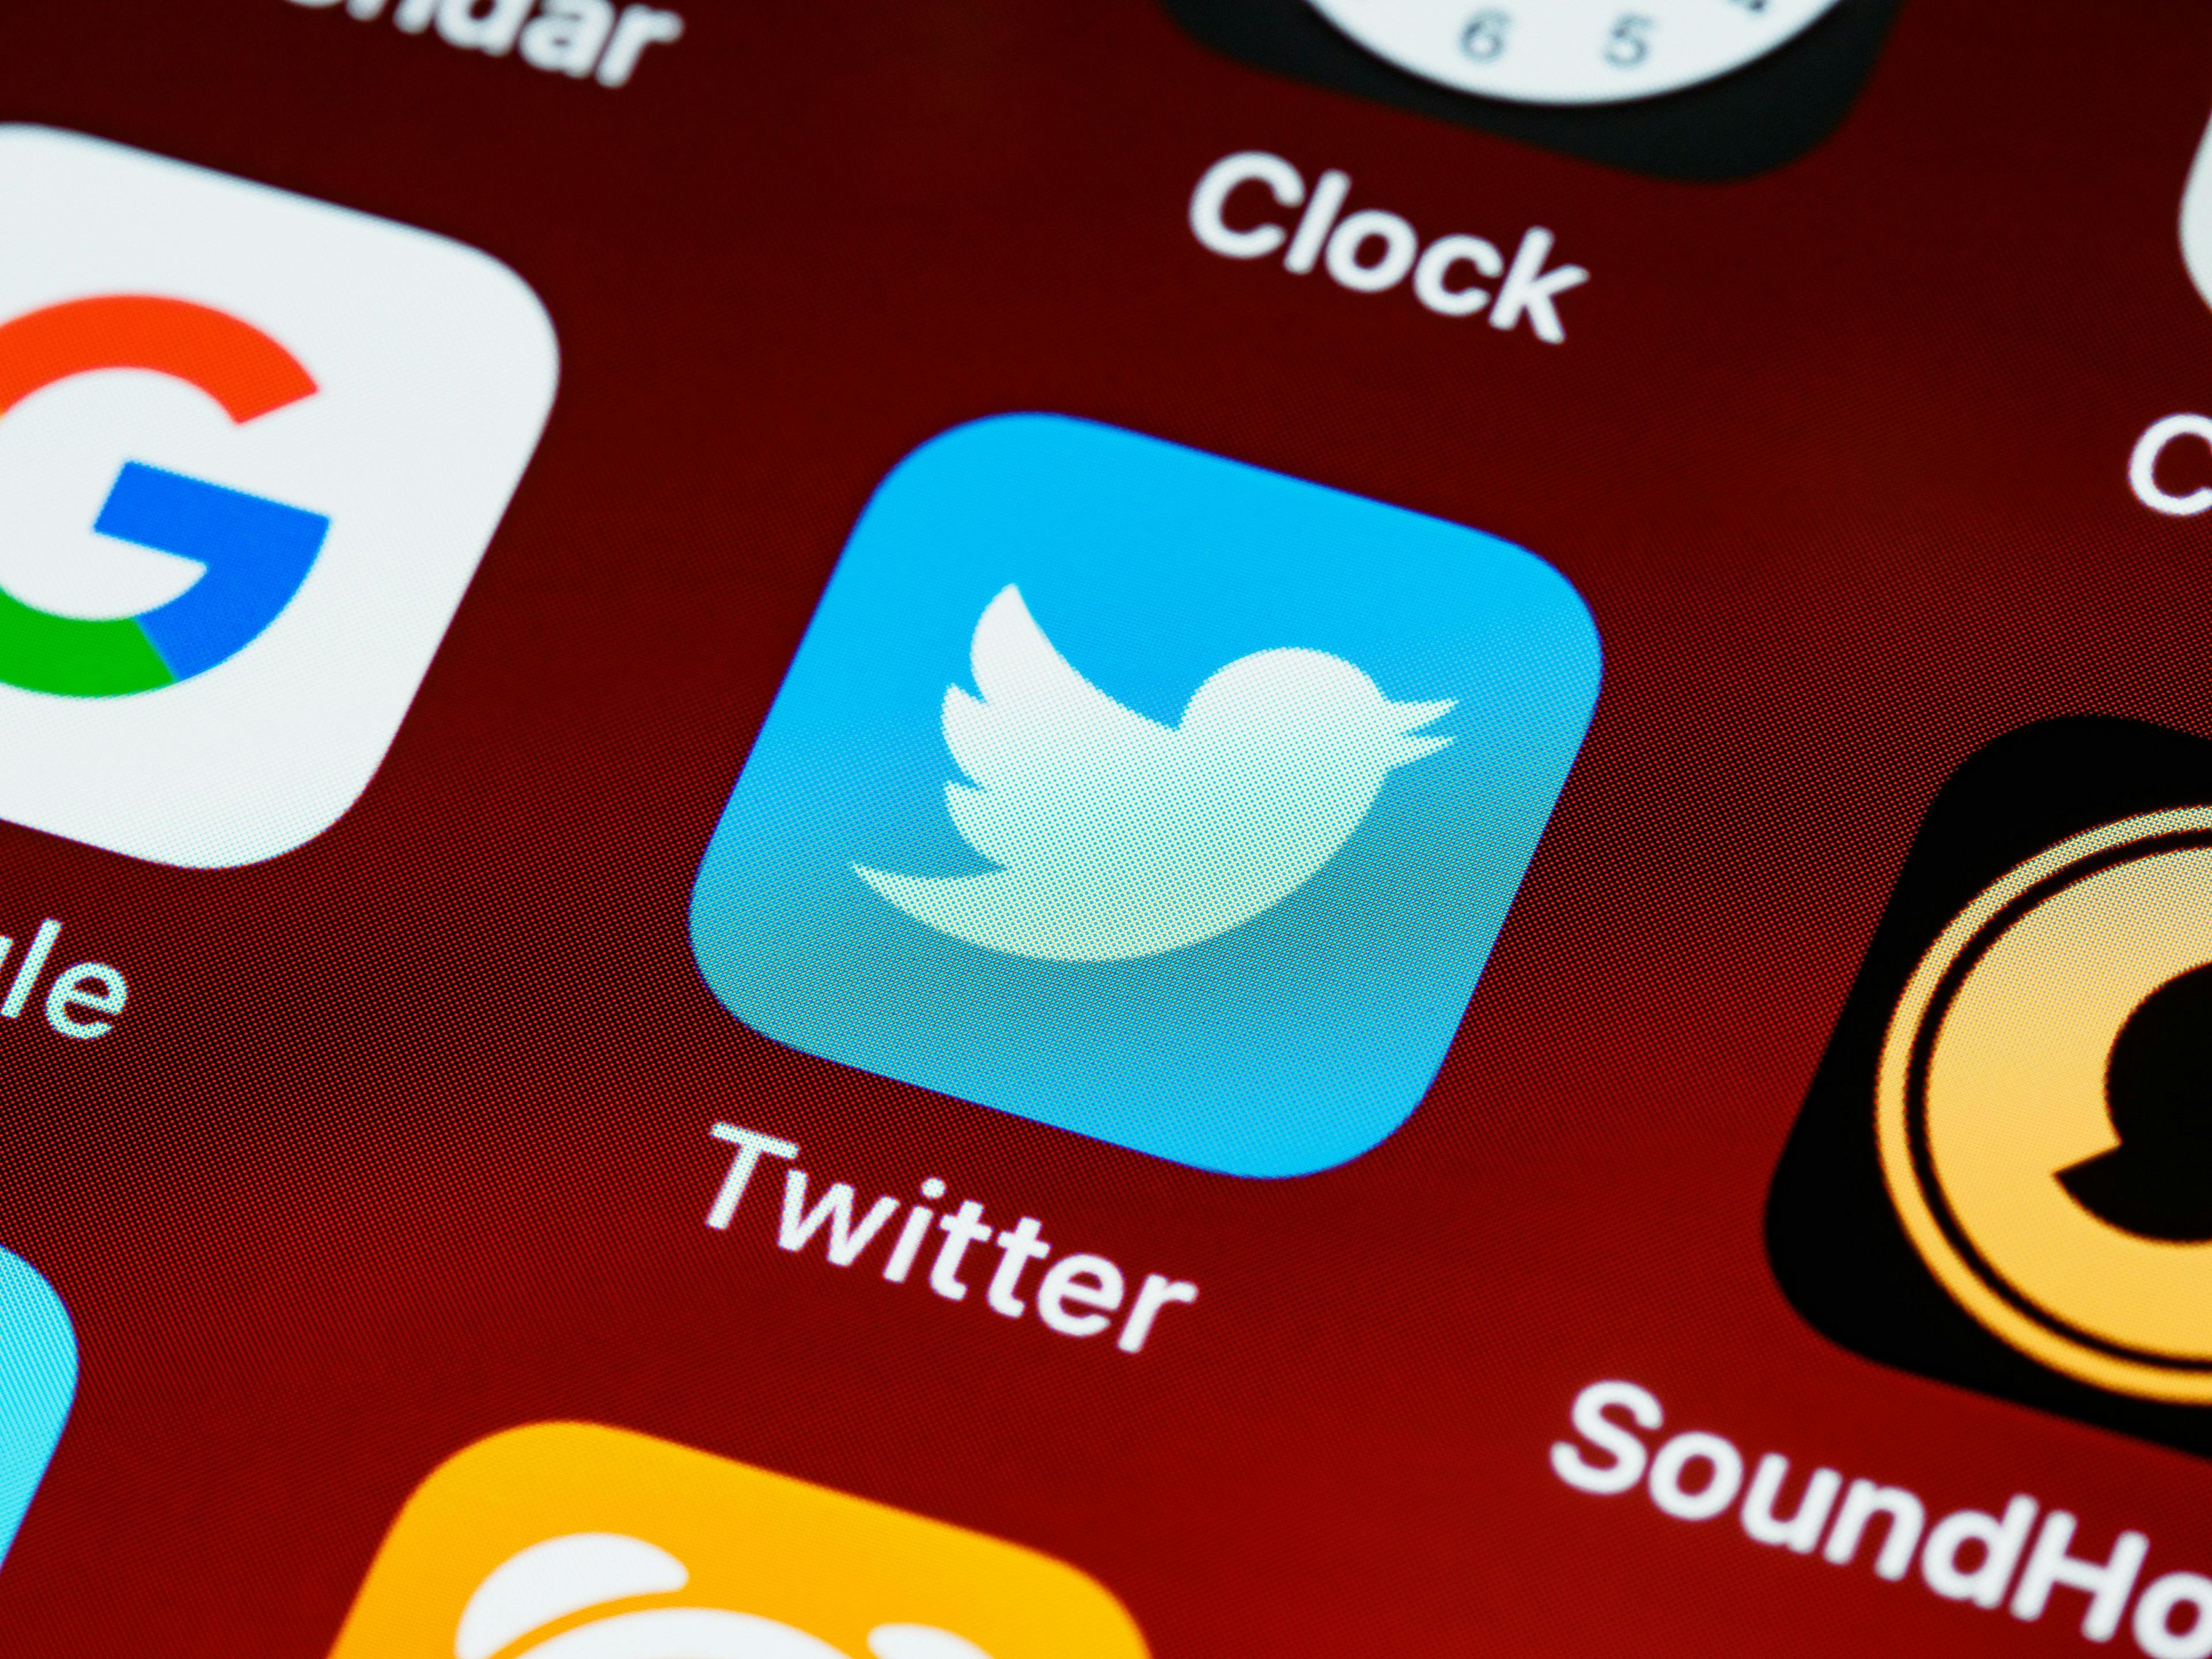 Twitter, app, screen, smartphone